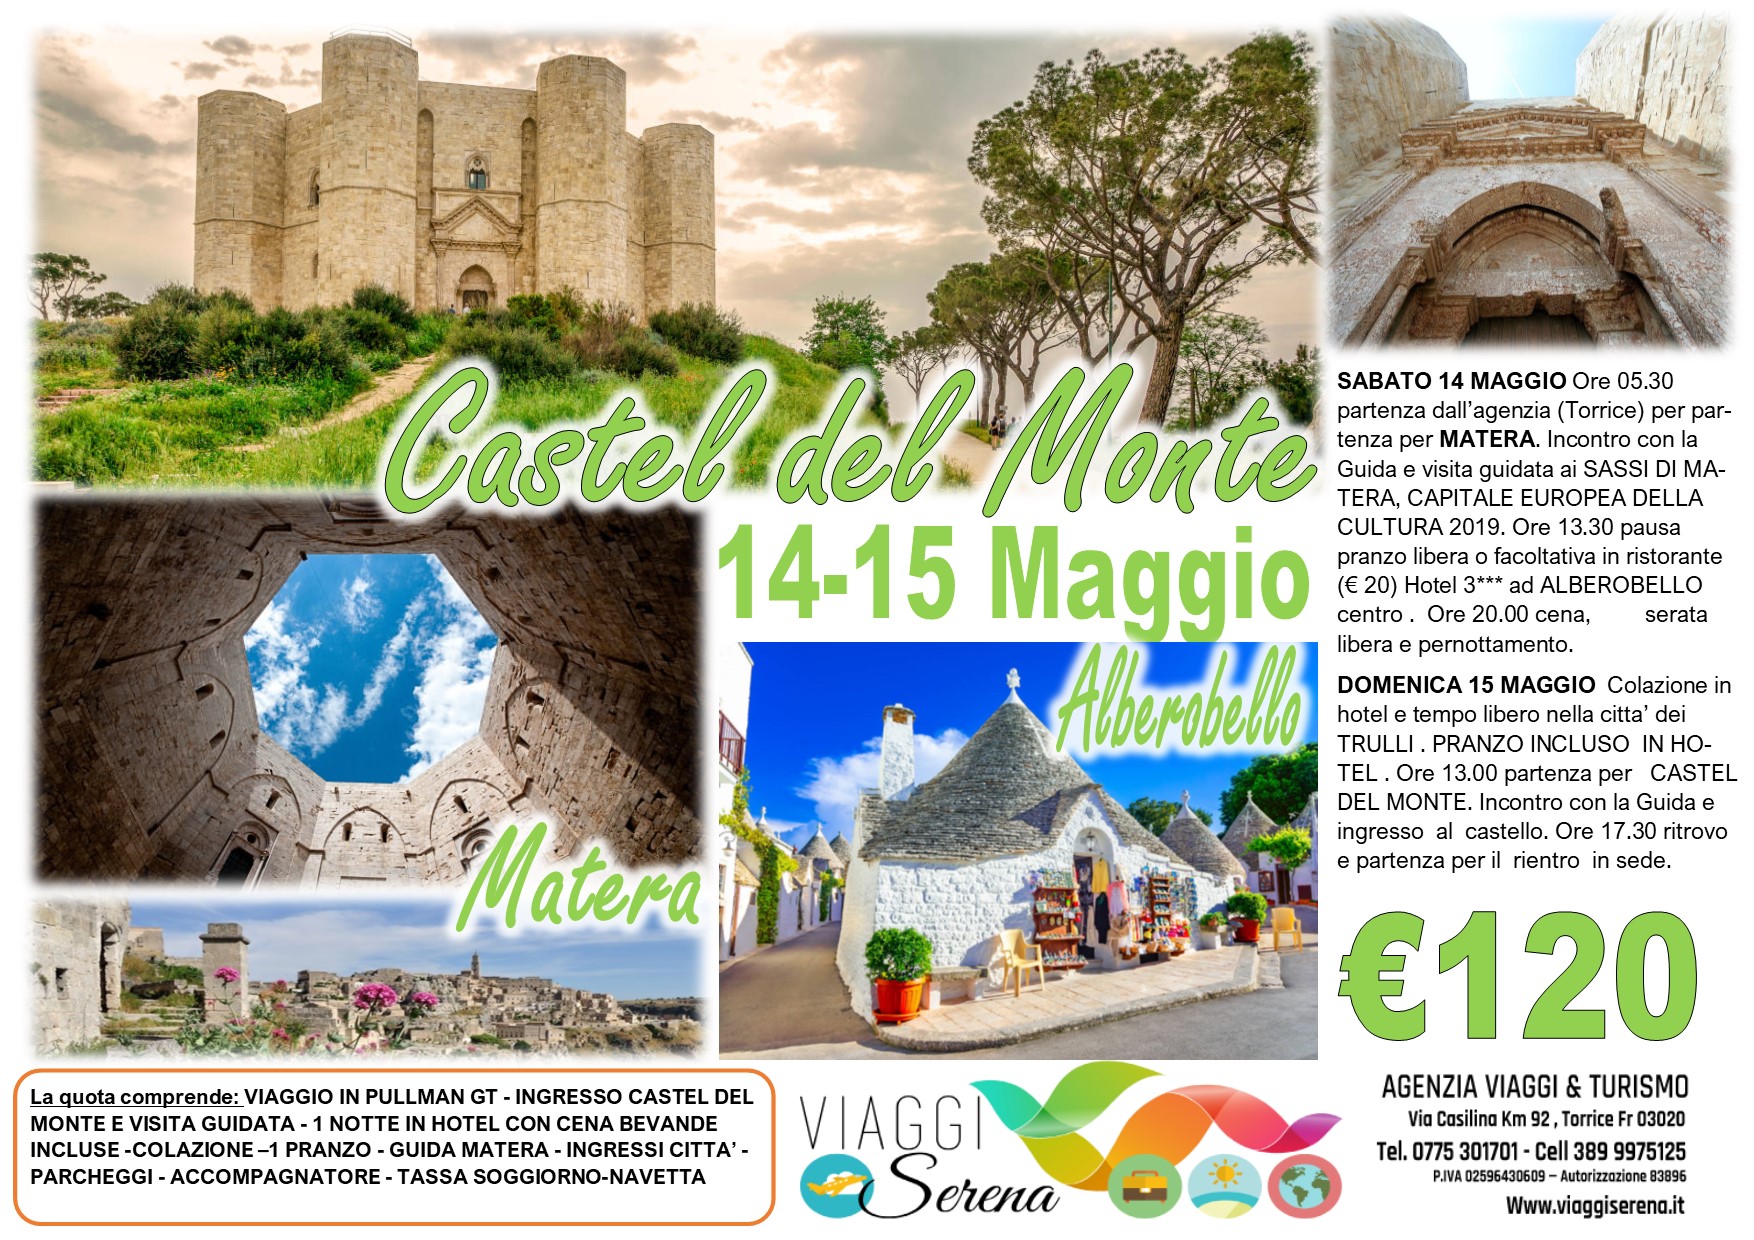 Viaggi di Gruppo: Castel del Monte , Alberobello & Matera “i sassi”14-15 Maggio € 120,00